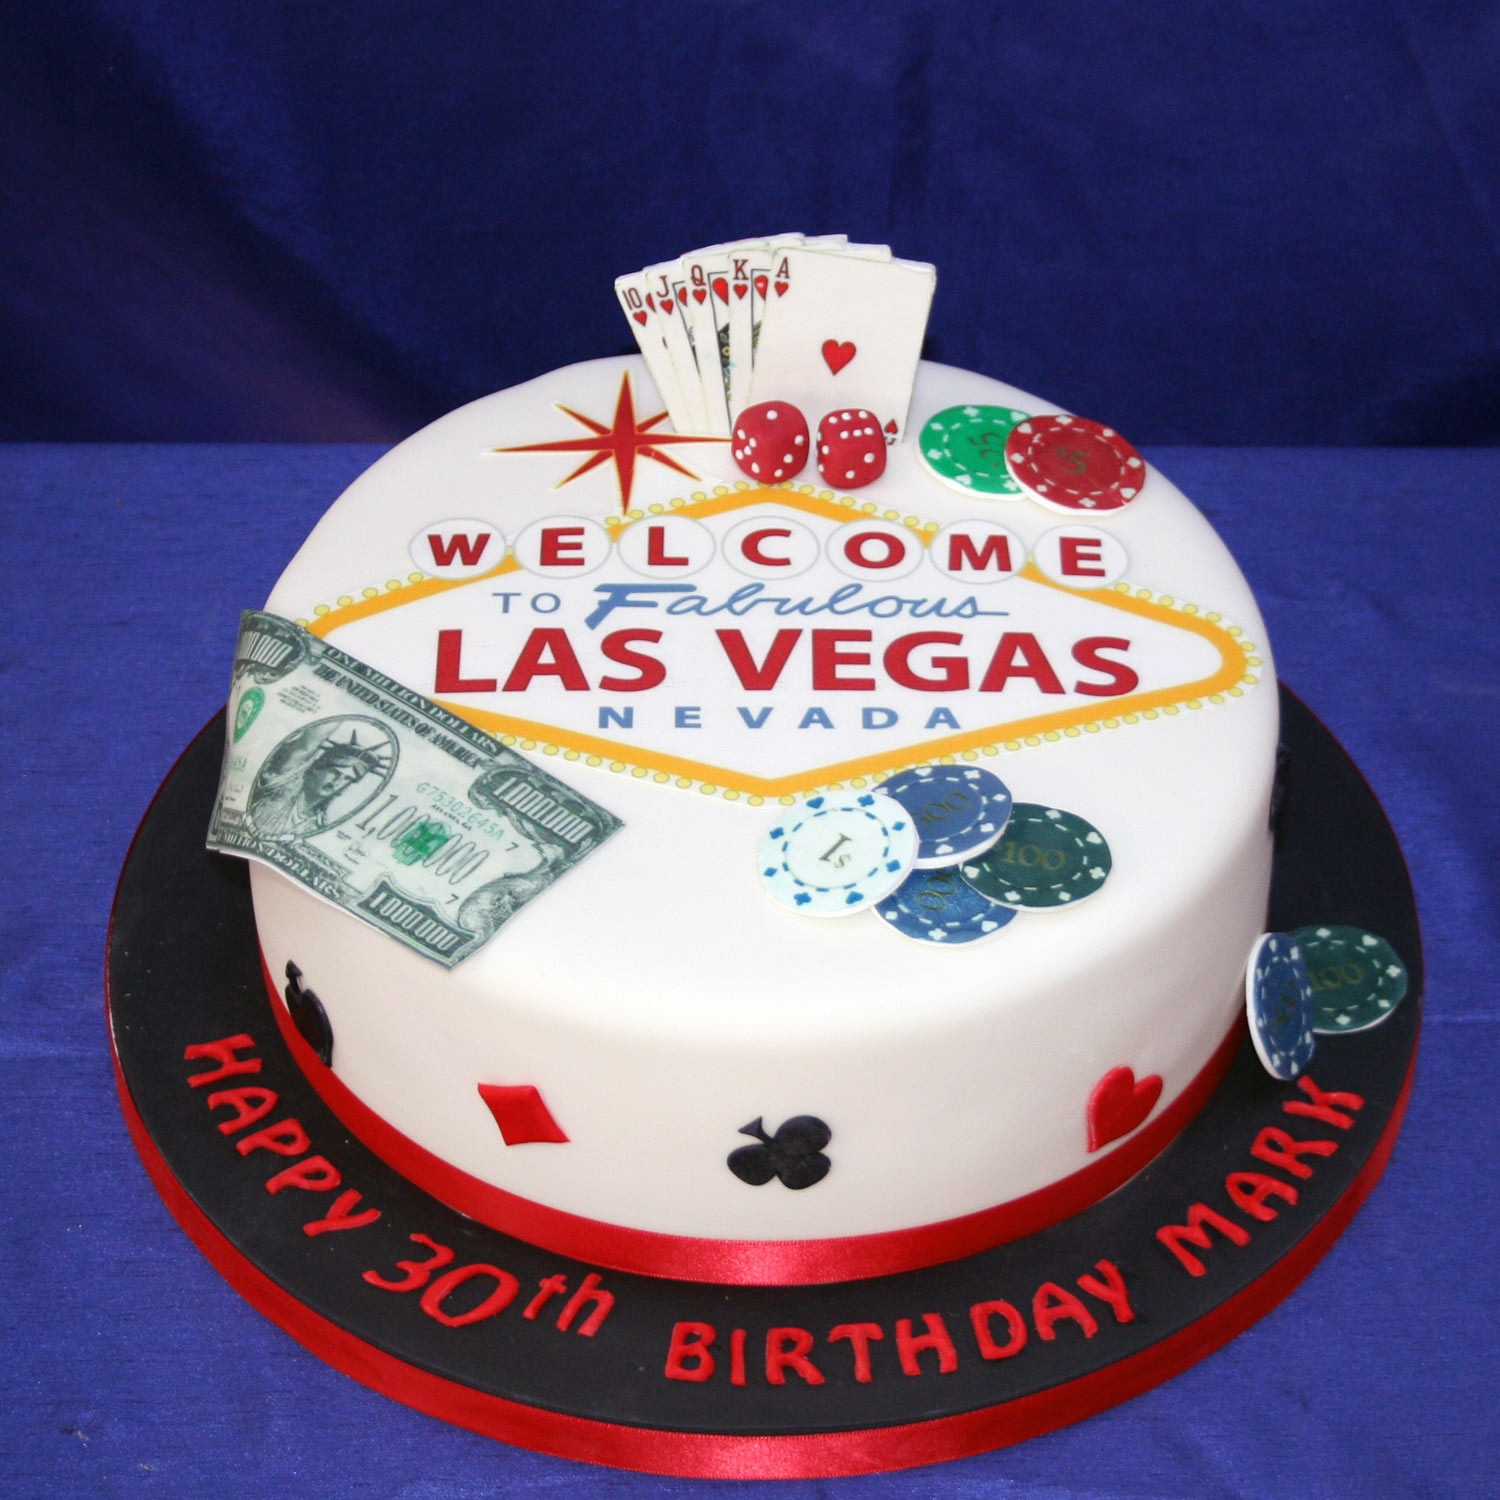 Birthday Cake Las Vegas
 Birthday Cakes Wedding Cakes Edinburgh Scotland